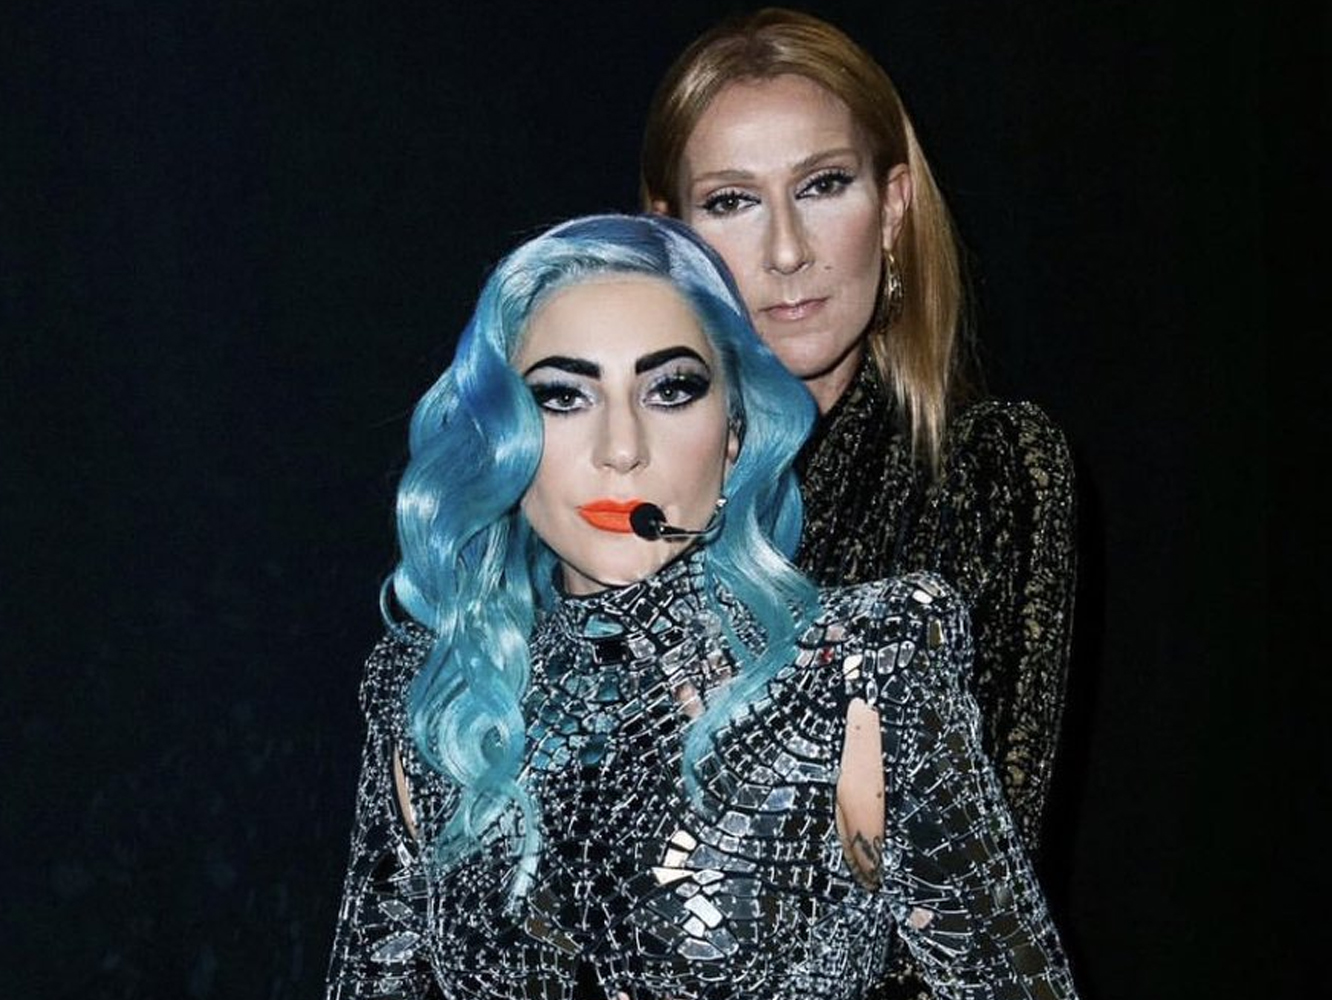  Celine Dion lo da todo en el ‘Enigma’ de Lady Gaga y esta le dedica una canción